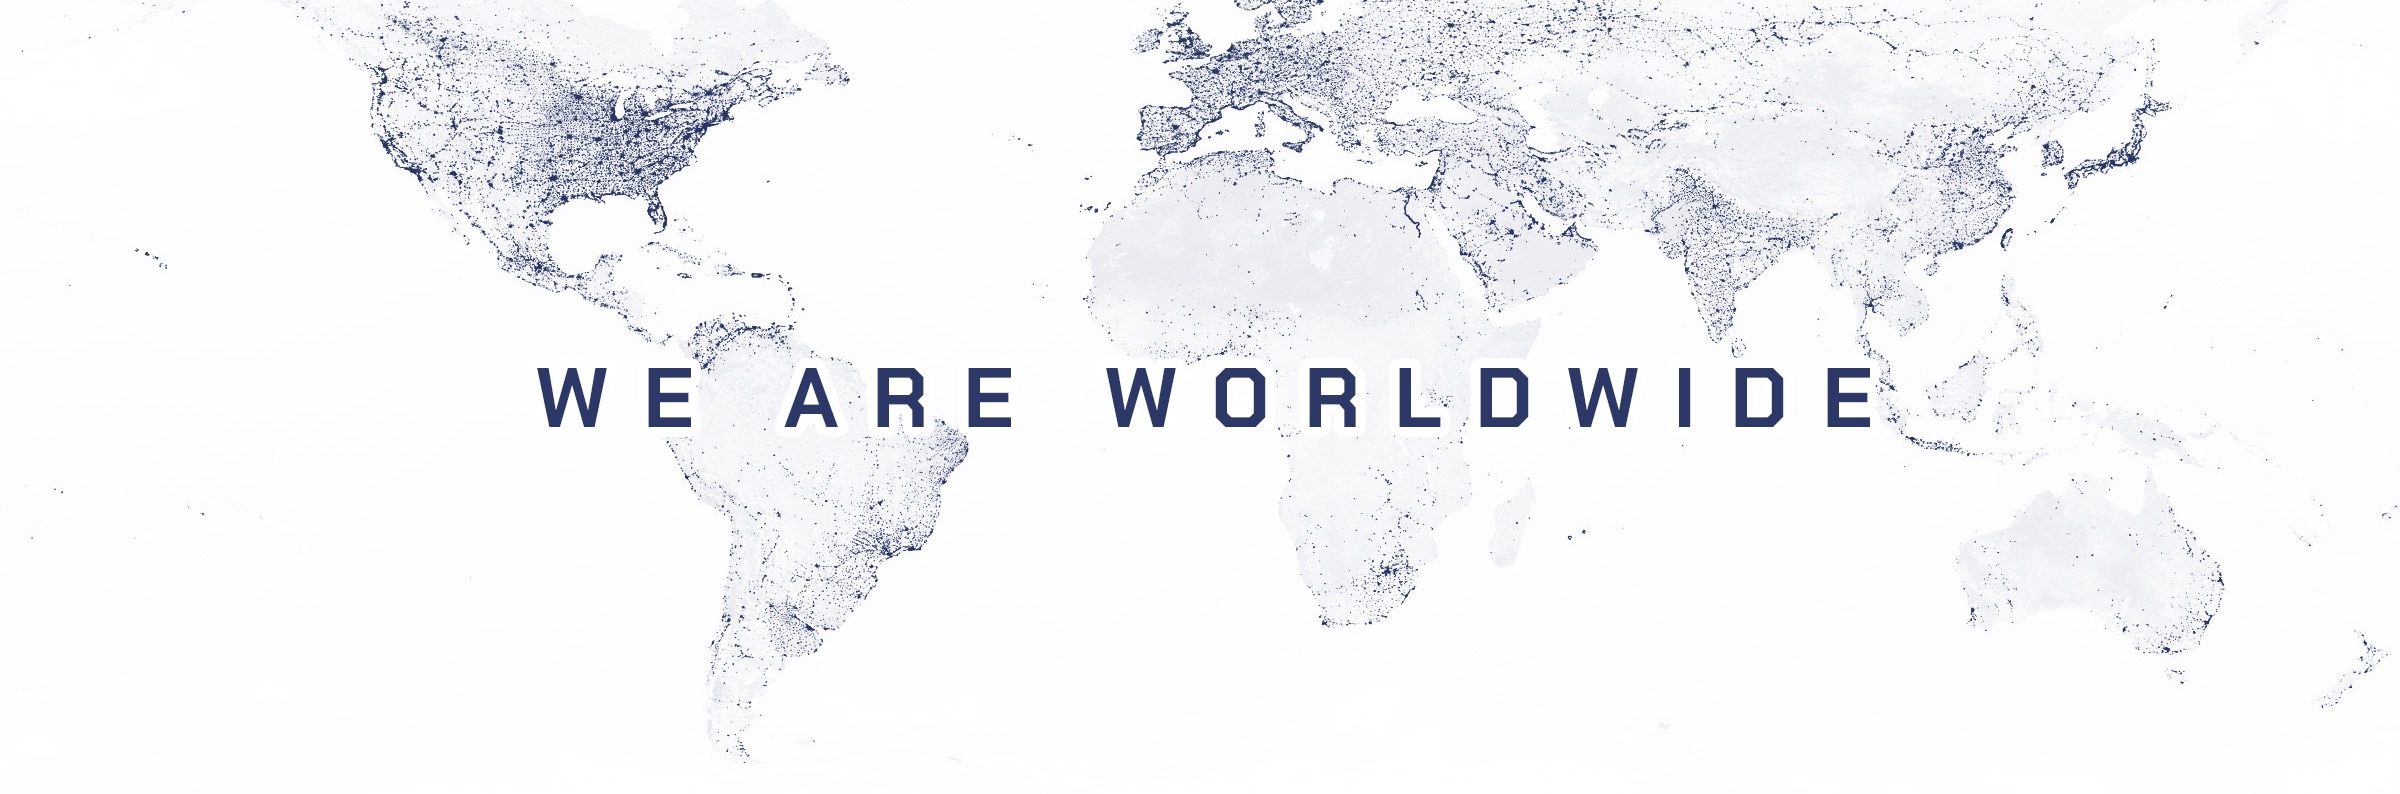 mapa świata z zaznaczonymi najważniejszymi punktami logistycznymi - symbol zasięgów spedycji międzynarodowej